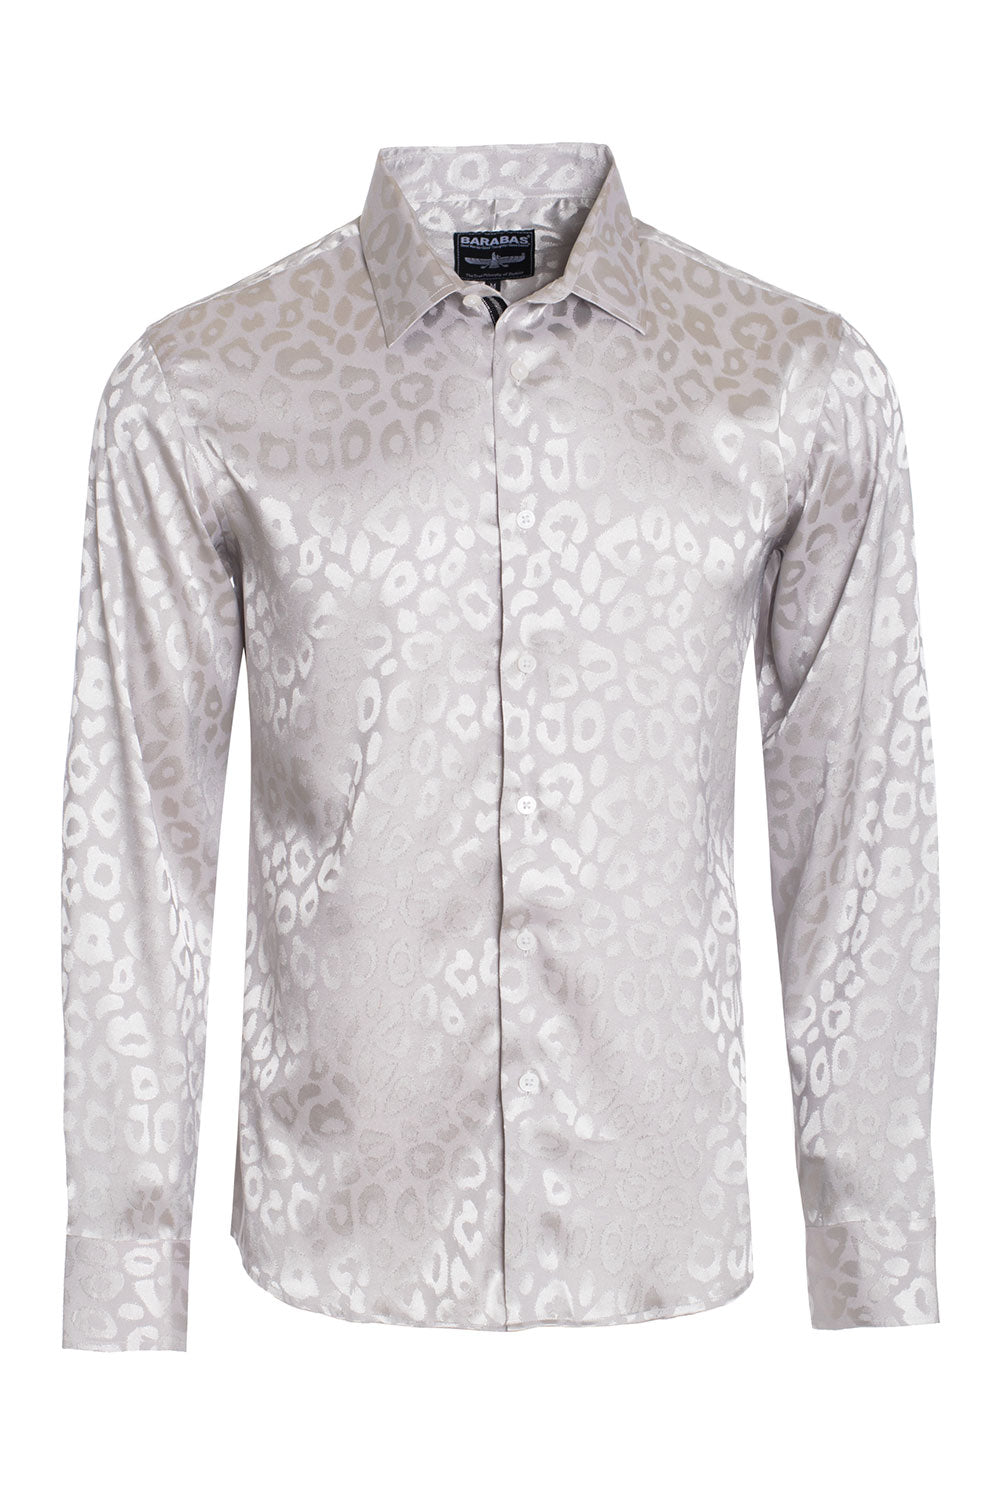 BARABAS Men textured leopard design pattern button down Shirts B310 silver